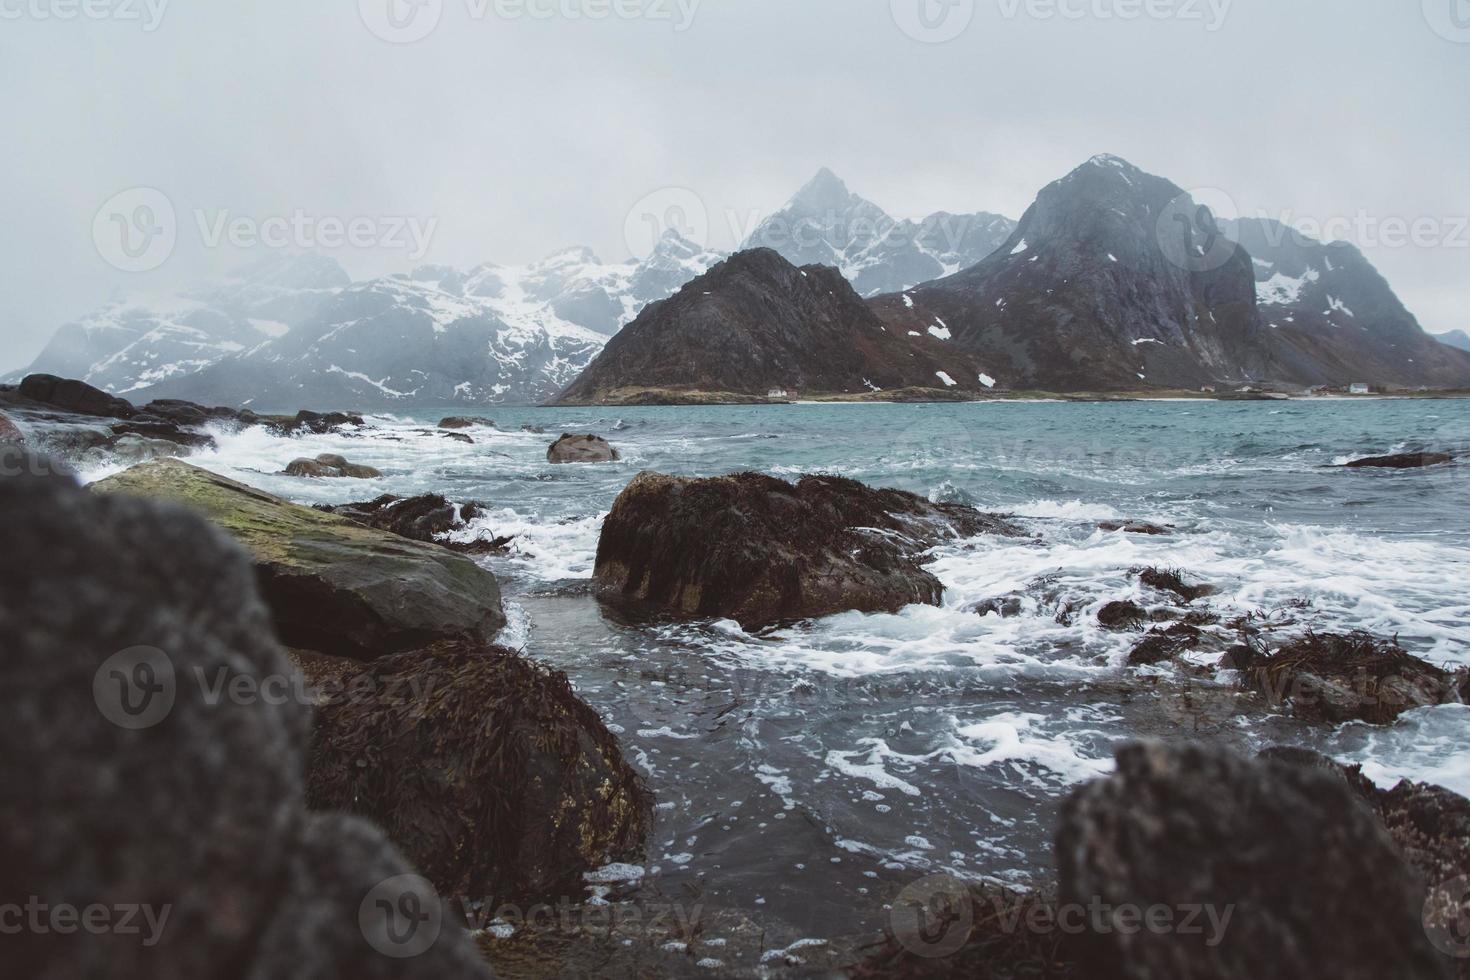 Norwegen Berge und Landschaften auf den Lofoten foto